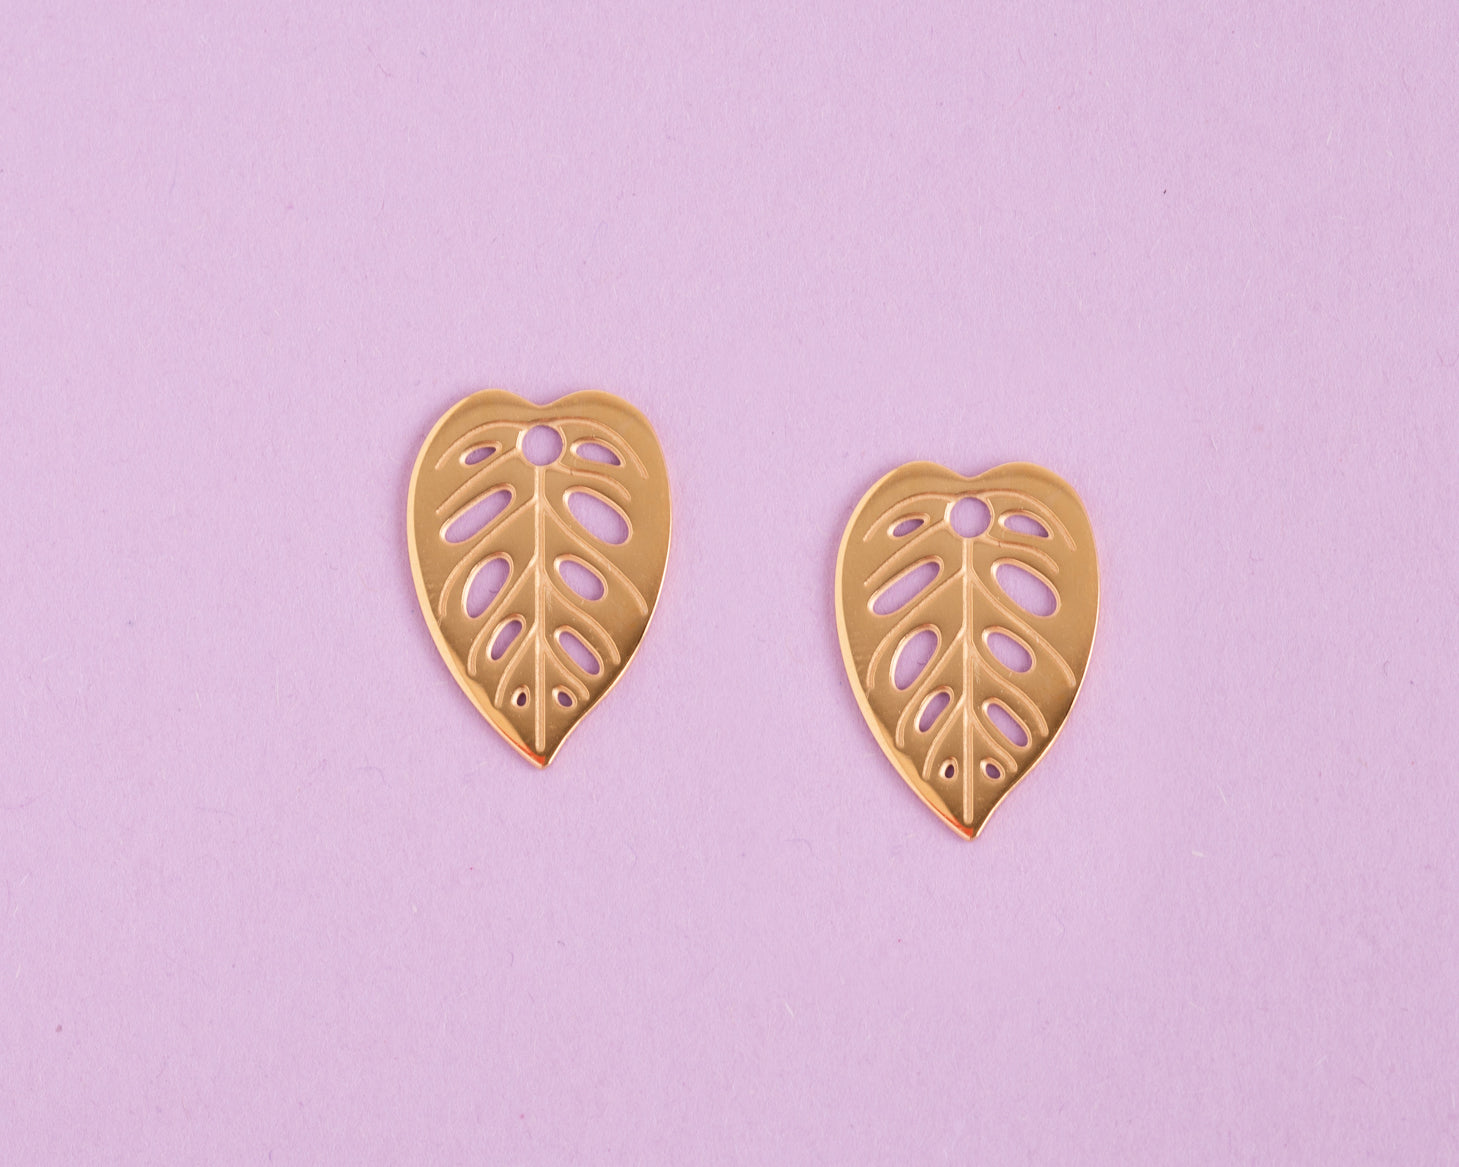 Golden Monstera Adansonii leaf earrings